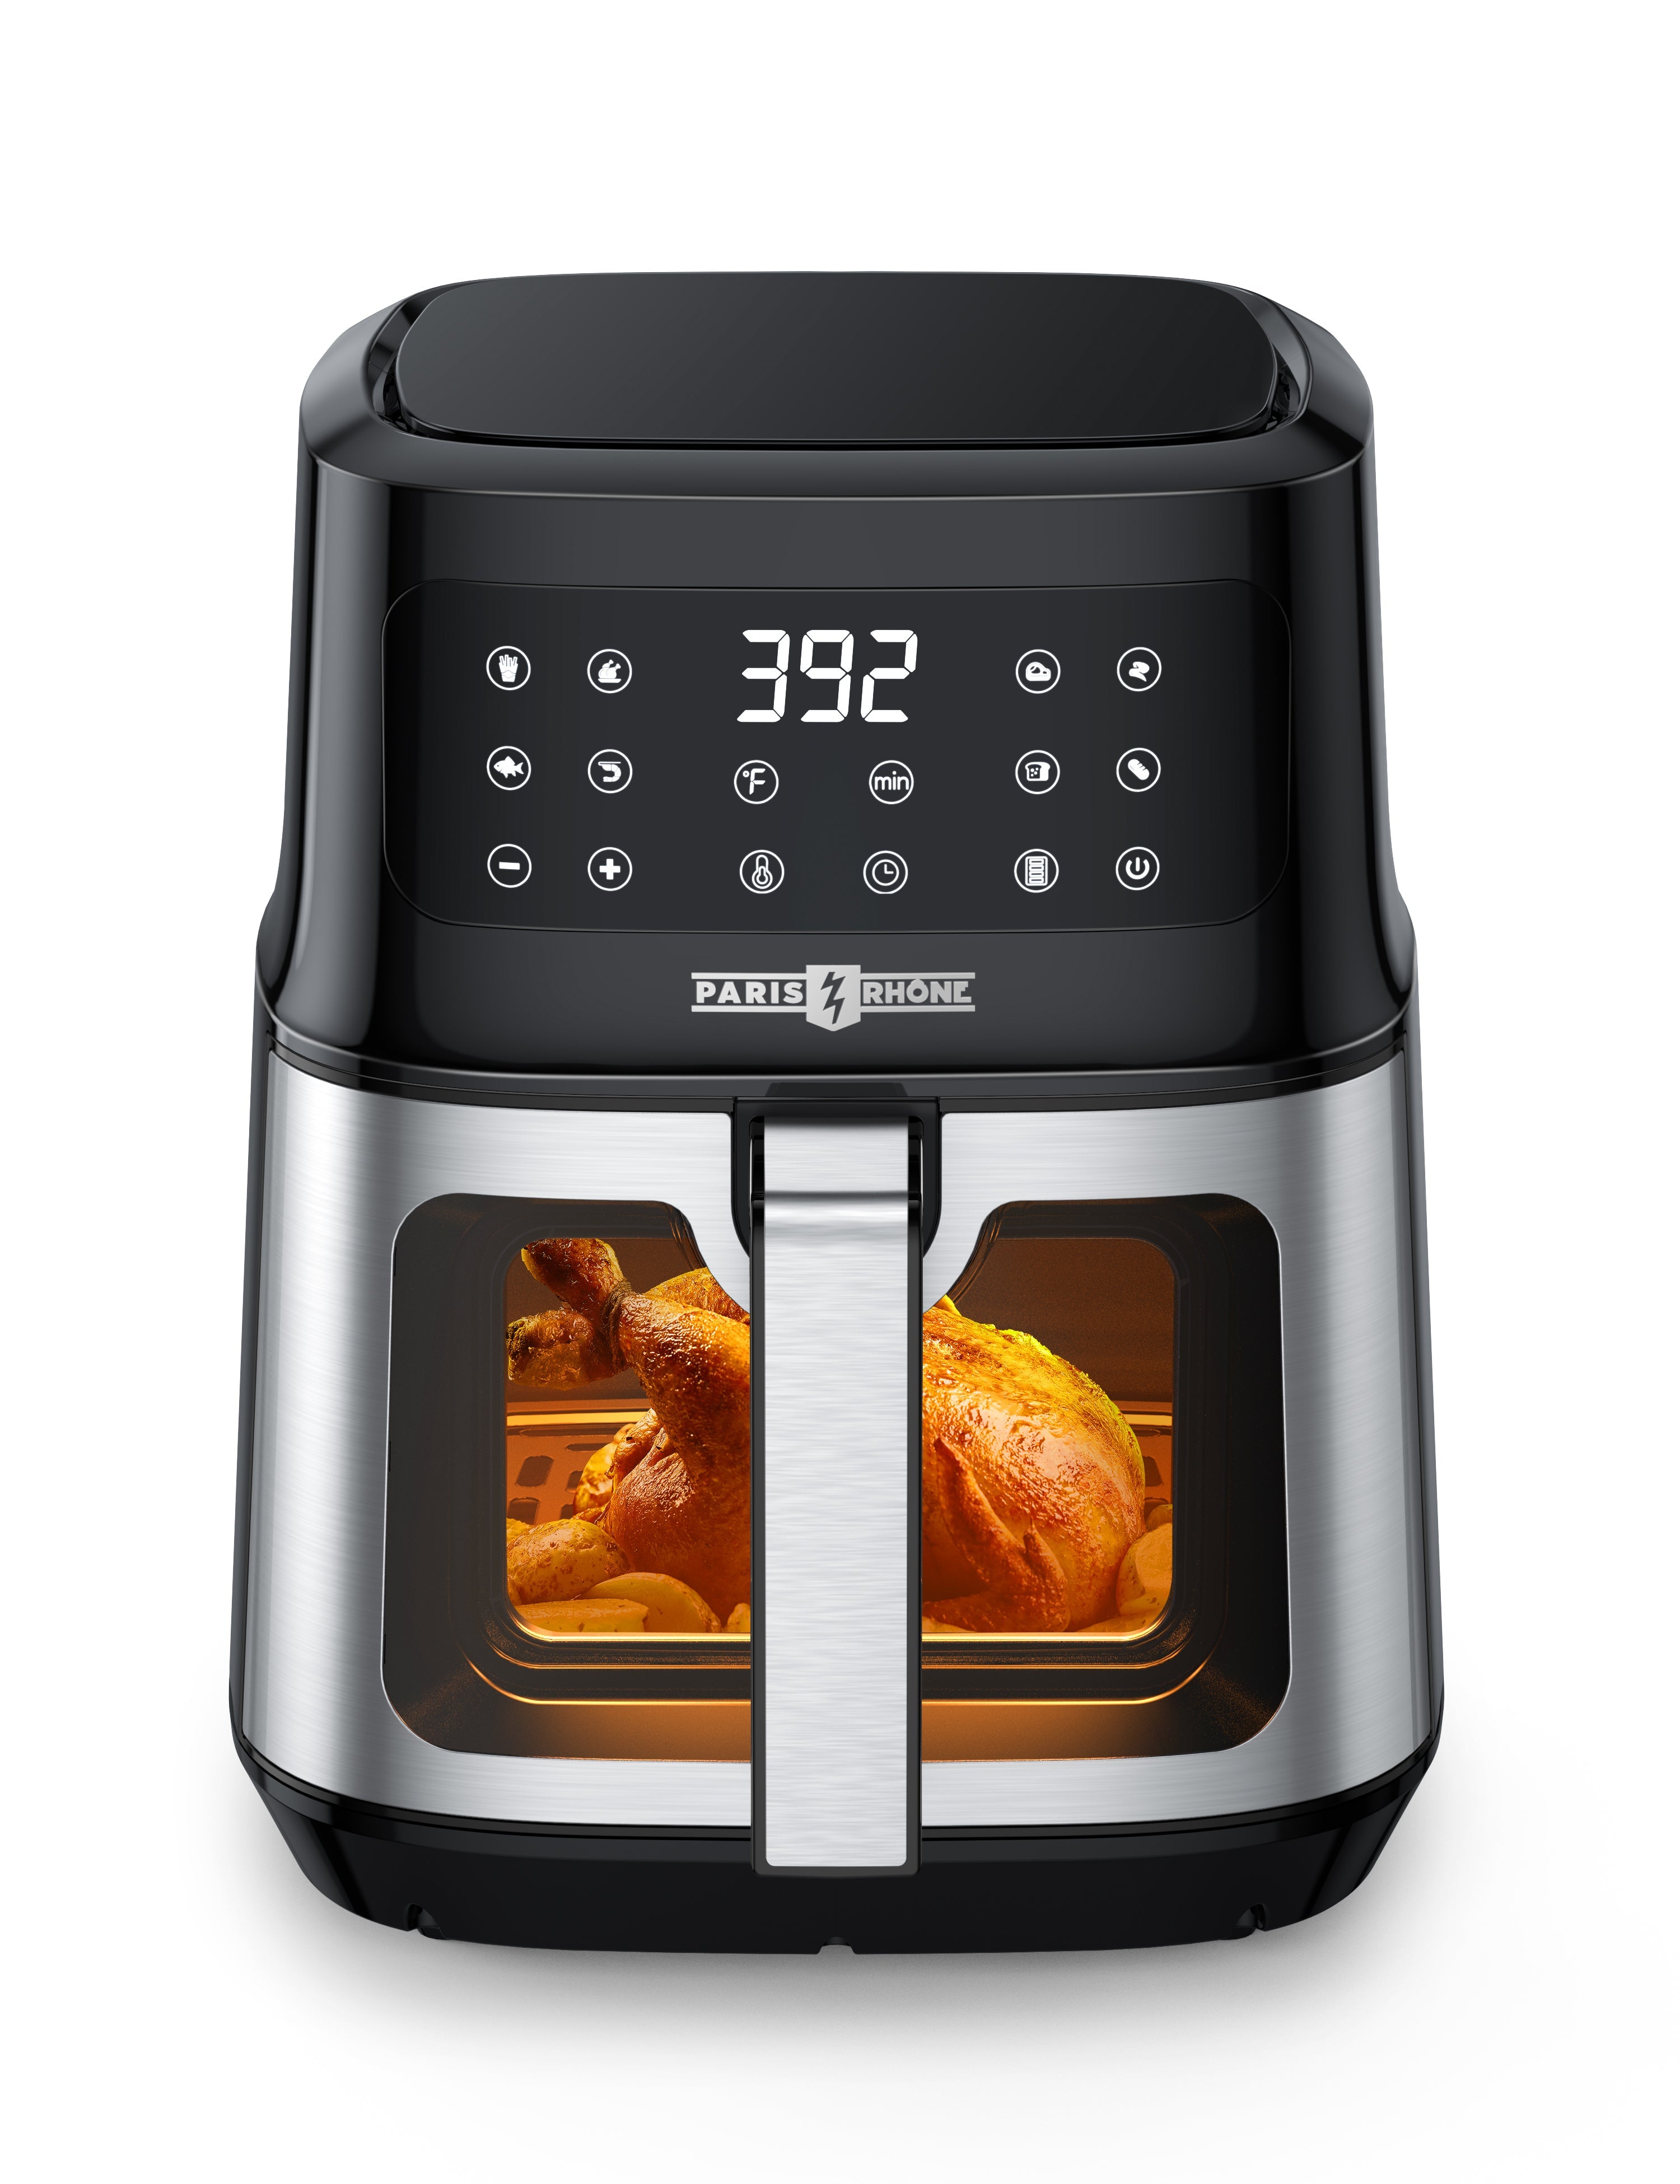 Fryer Cooker AF014, Quart Toaster Oven With 8-in-1 Paris Air 5.3 Rhône